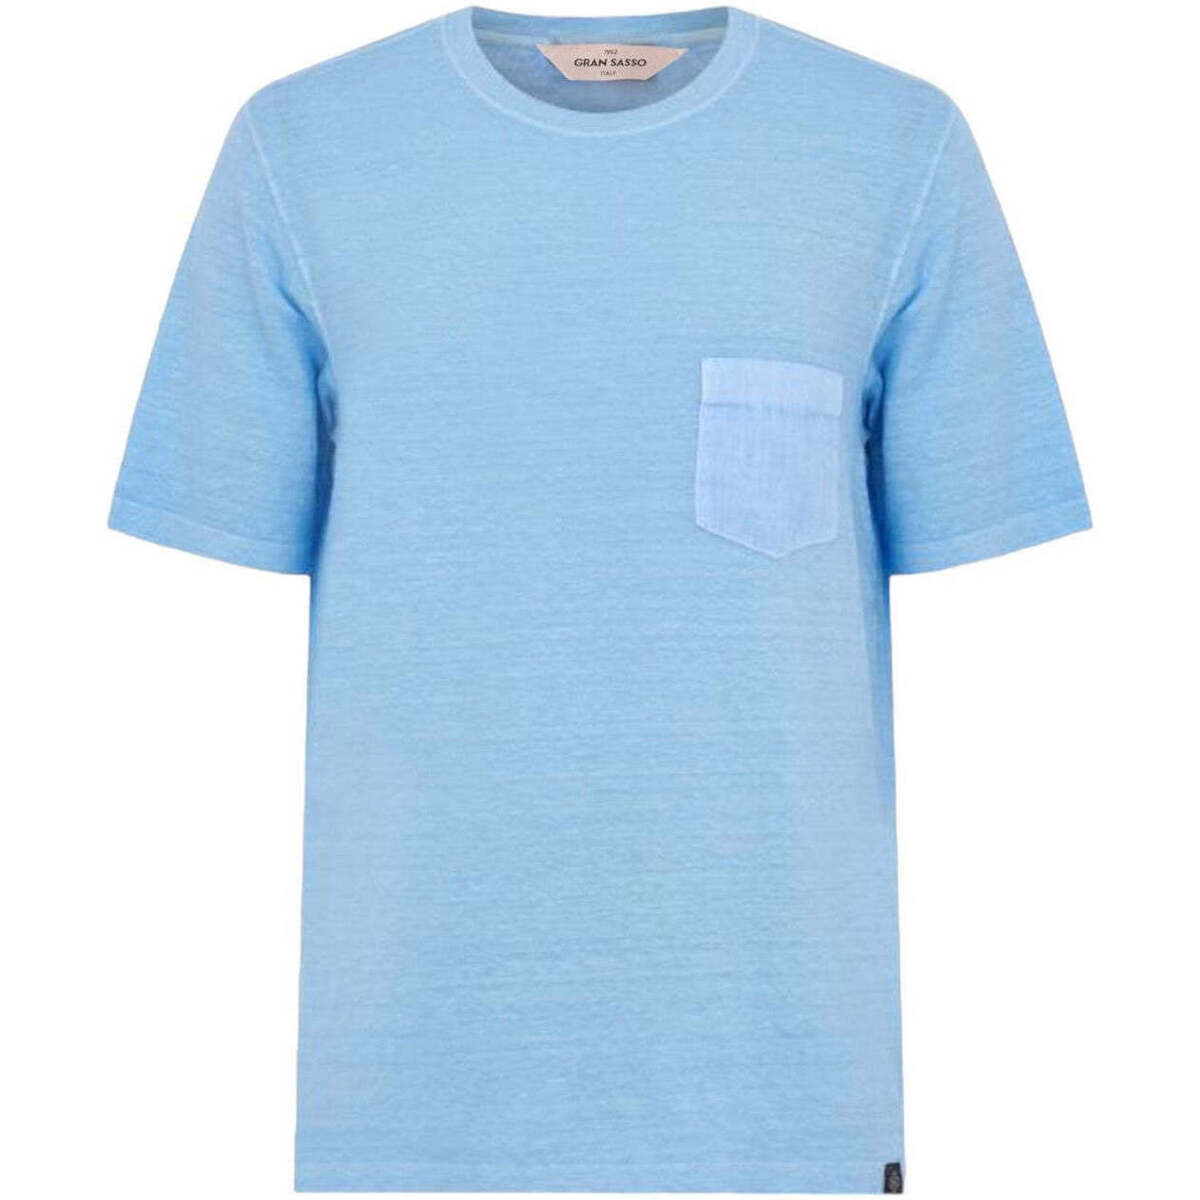 Vêtements Homme T-shirt Imprimé Fashion T-shirt 1900 Blanc  Bleu